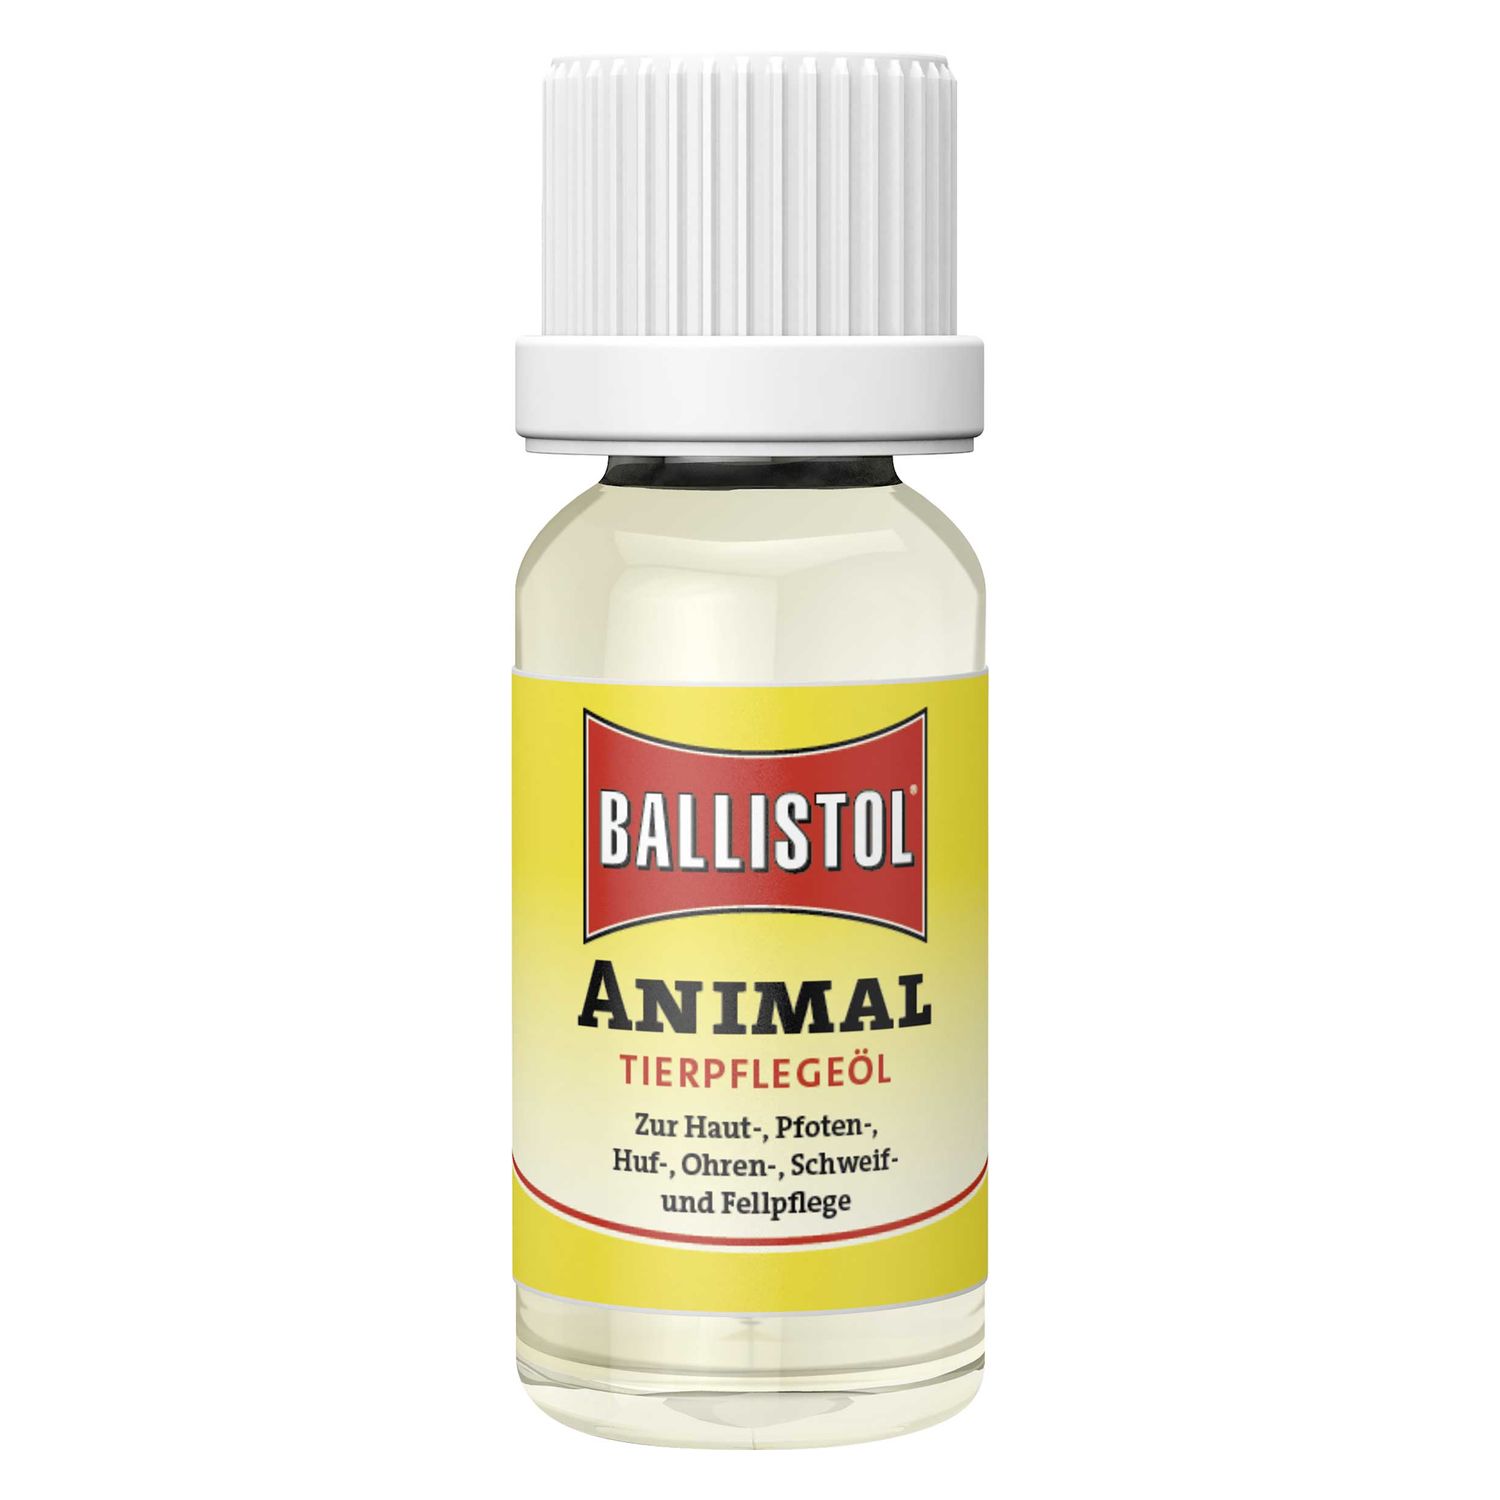 BALLISTOL Tierpflegeöl Animal 10 ml